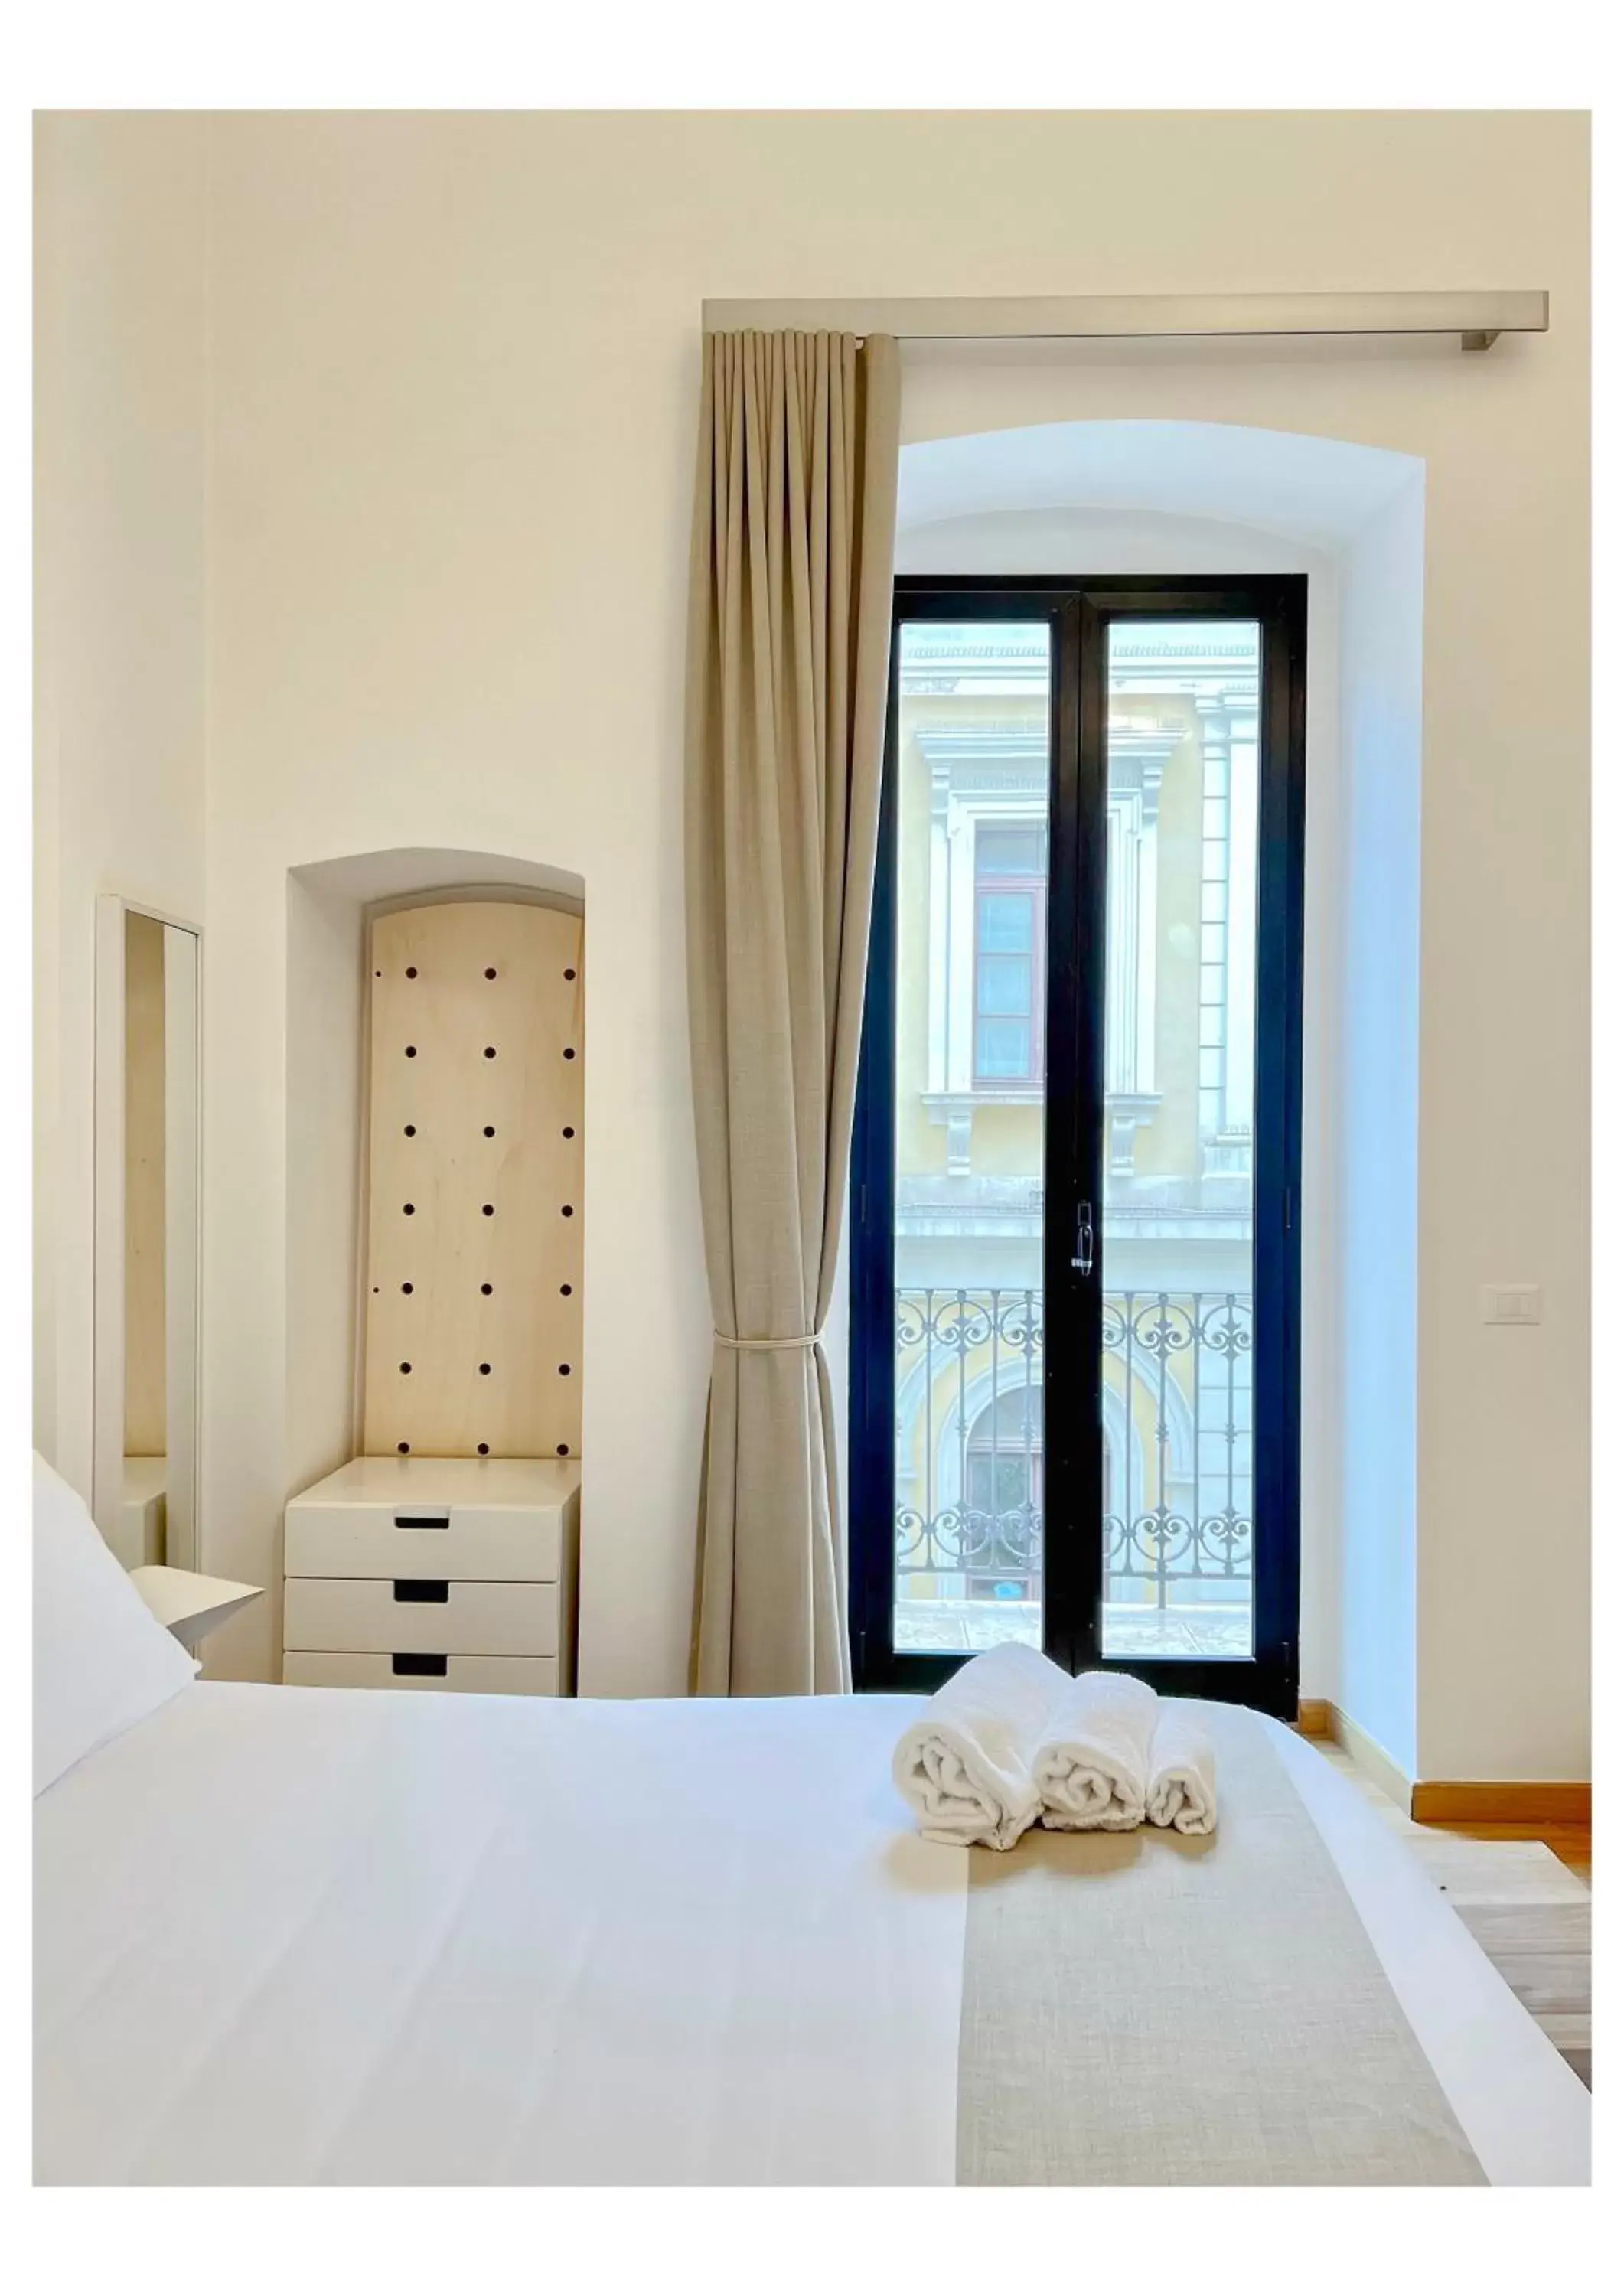 Bed in Imago Plus Hotel